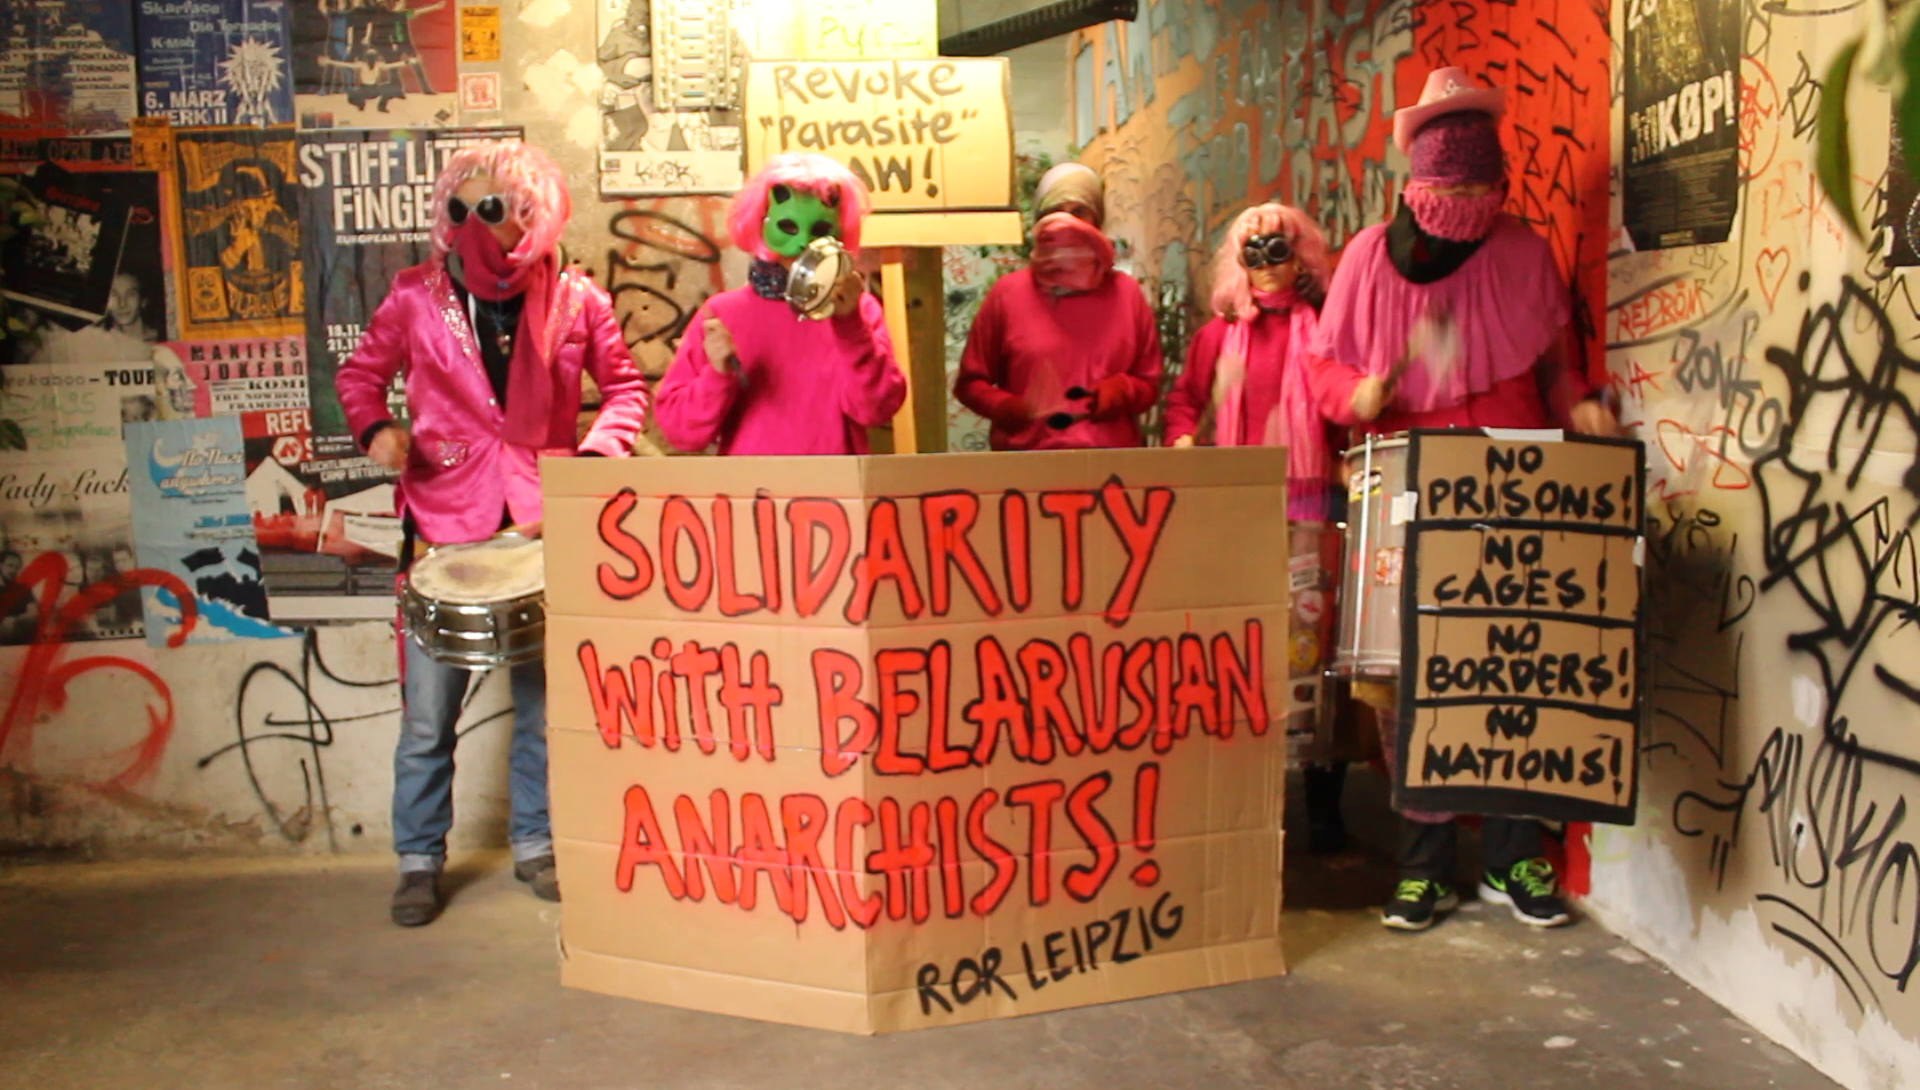 Акция солидарности с анархистами в Лейпциге